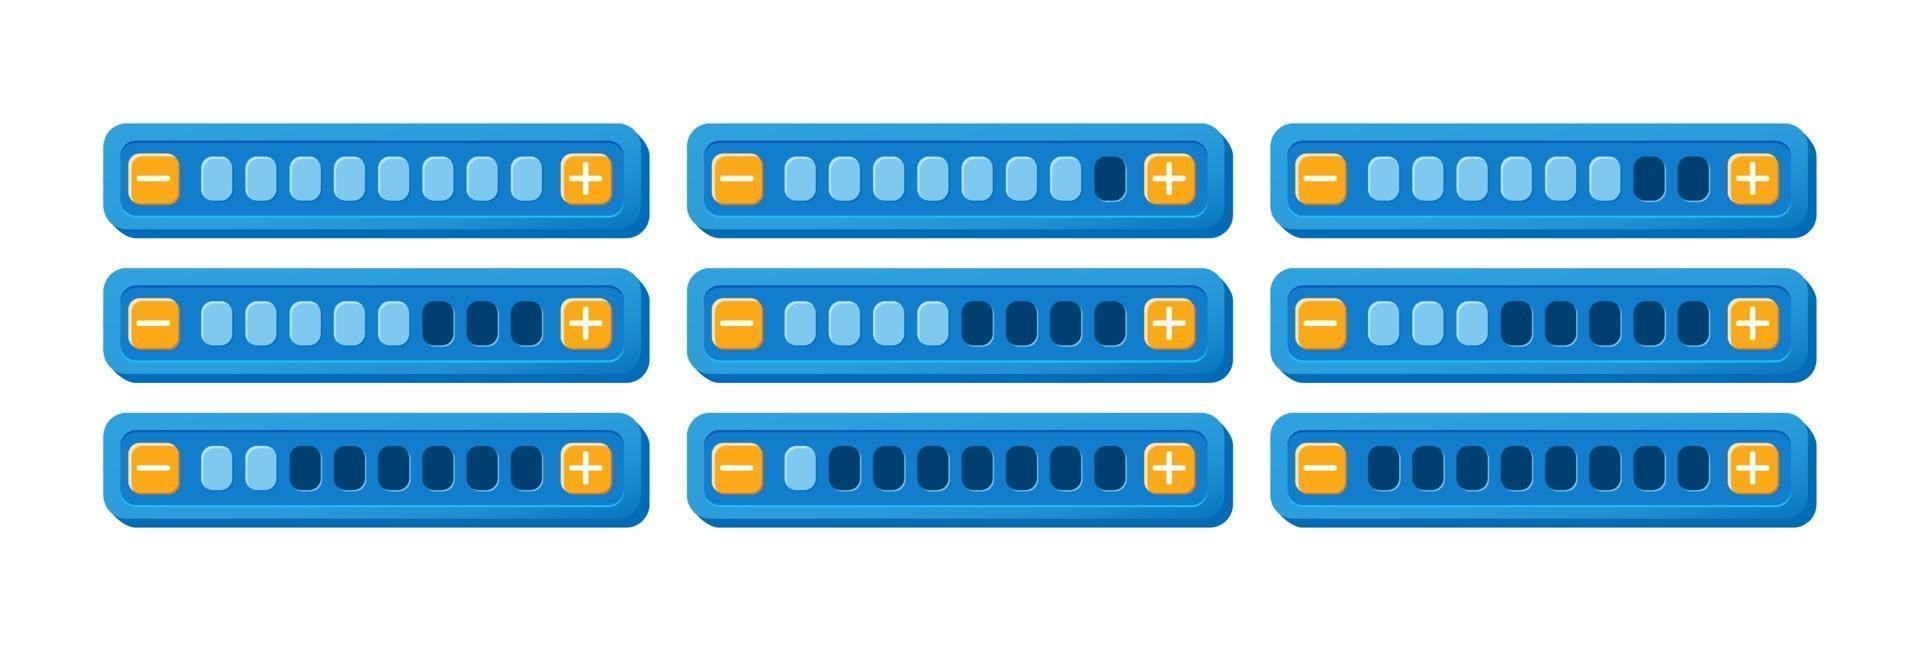 conjunto de painel de barra de progresso de interface do usuário do jogo roxo engraçado com botão de aumentar e diminuir para ilustração de vetor de elementos de recurso de interface